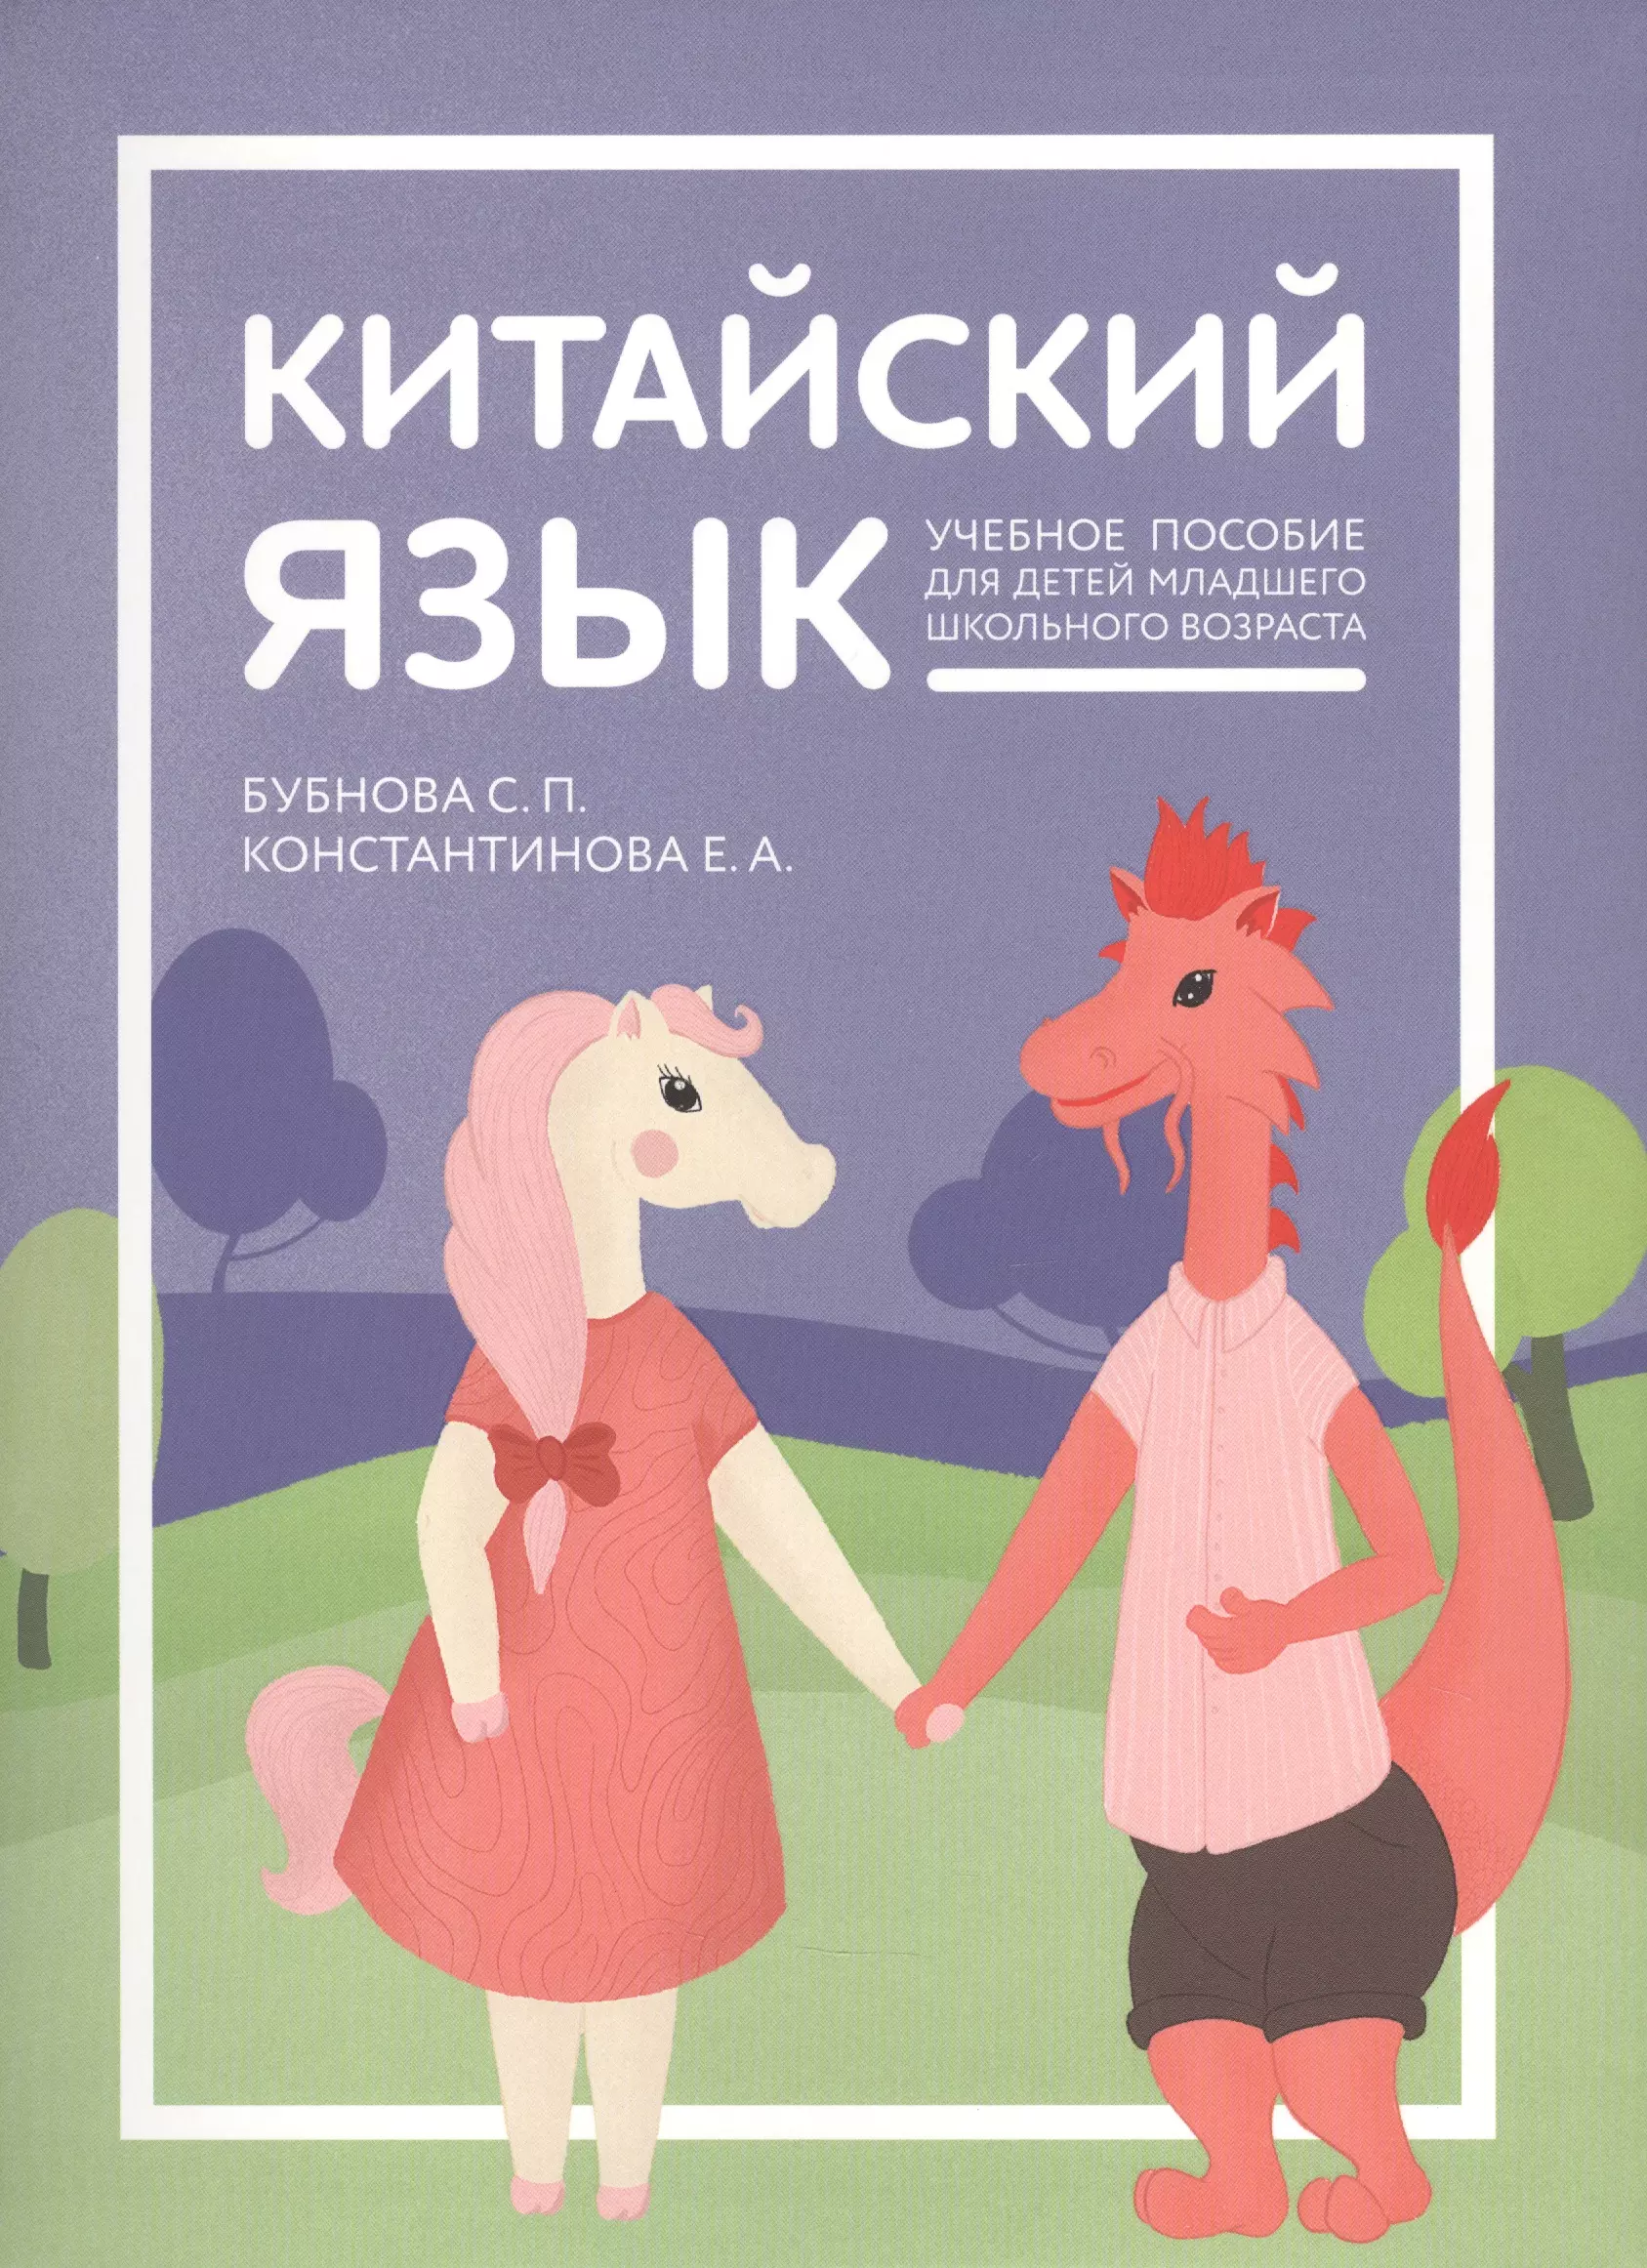 Константинова Екатерина Александровна - Китайский язык: учебник для детей